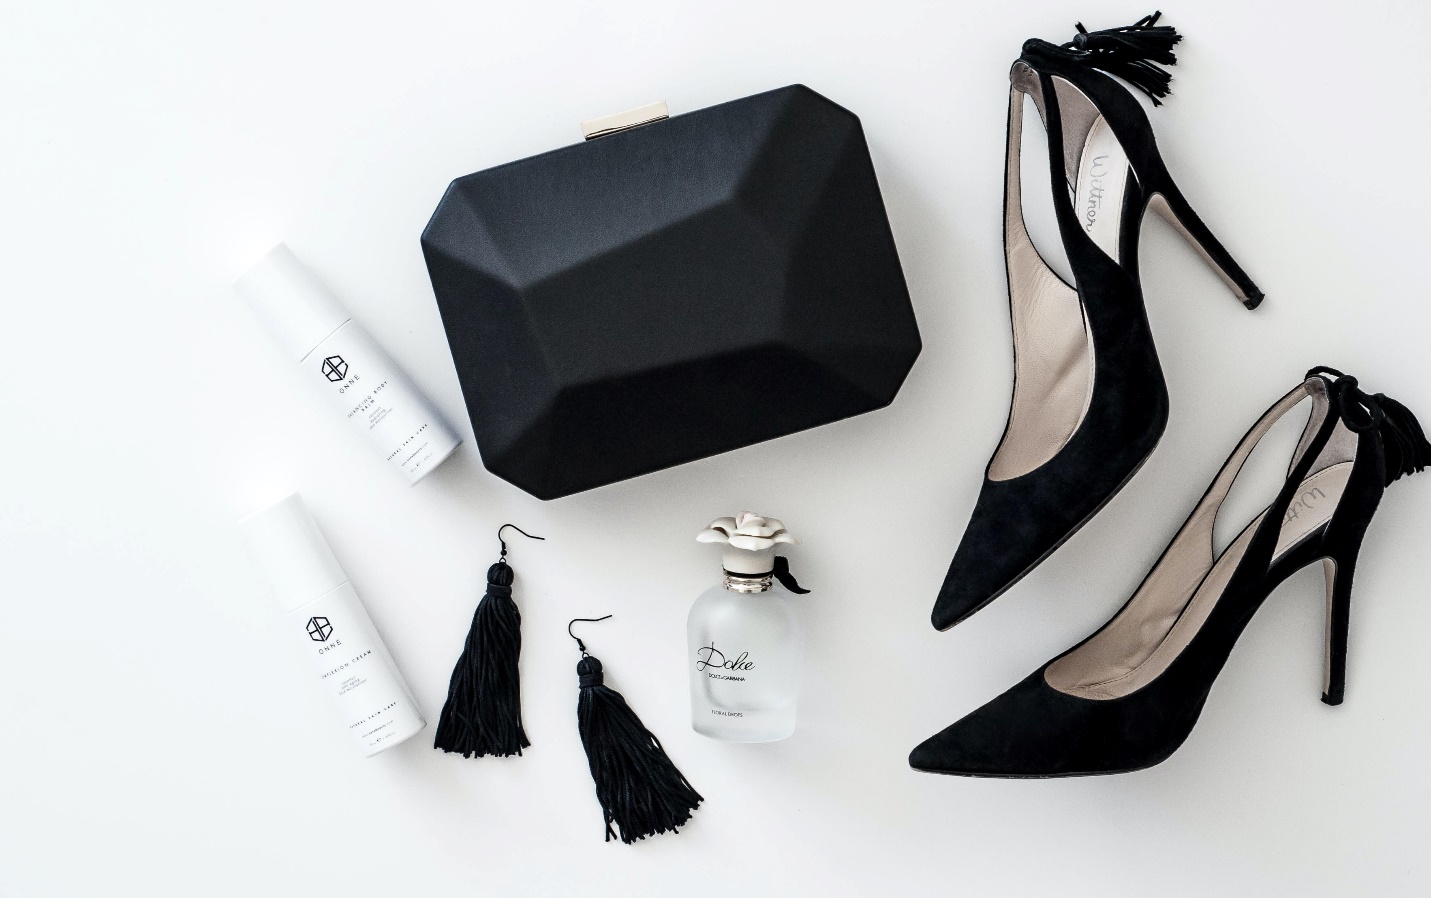 classic black heels, geometrical wallet, and earrings